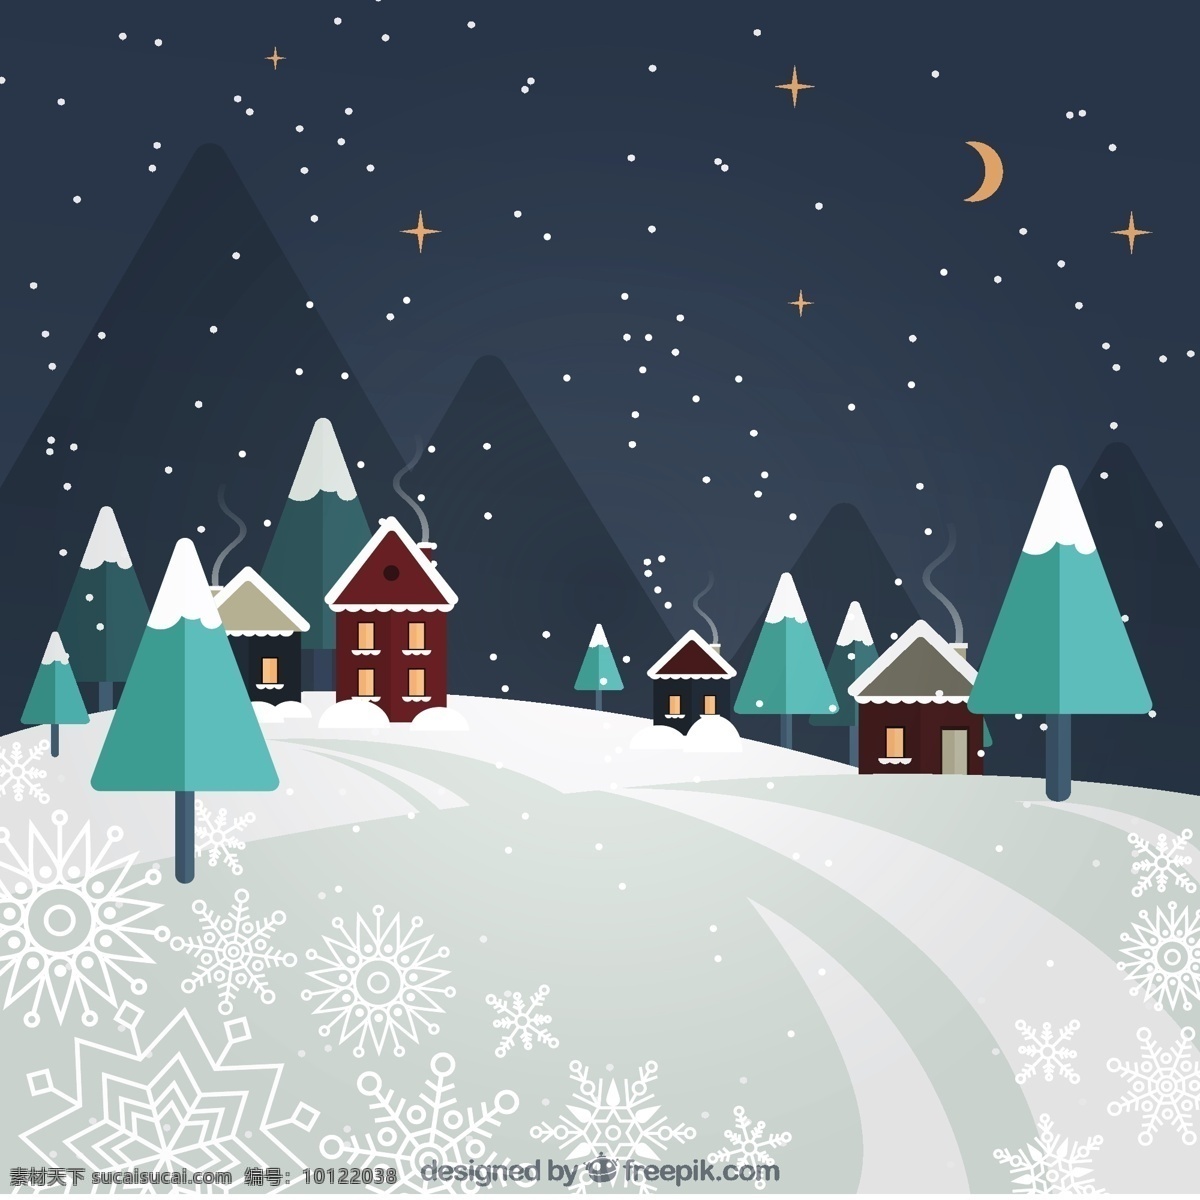 房子 松树 夜晚 风景 背景 雪 圣诞节 圣诞快乐 冬天 景观 平坦 圣诞背景 晚上 装饰 平面设计 文化 冬天冷 假期